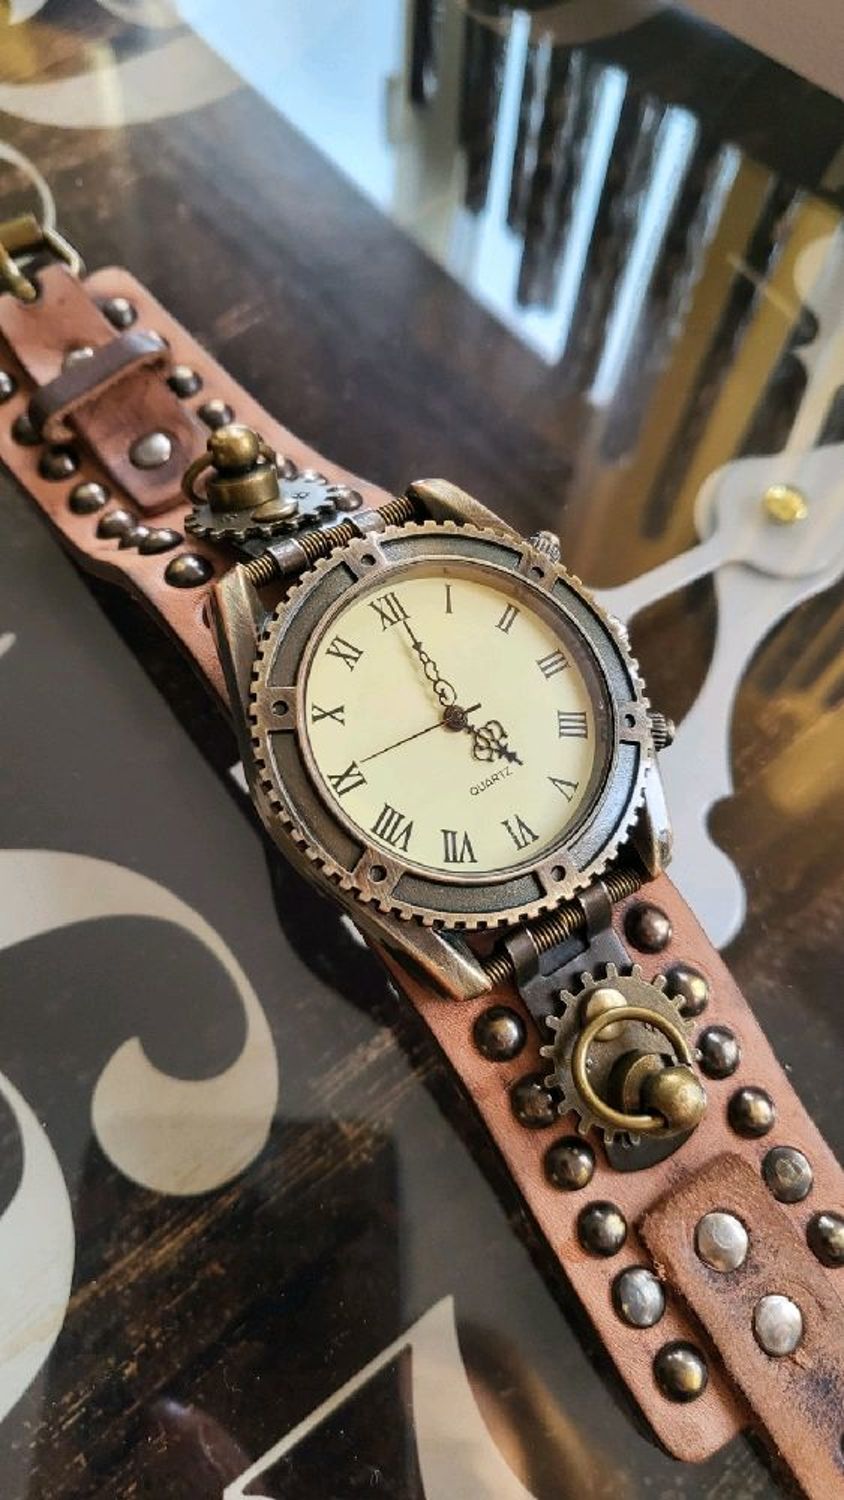 Photo №1 к отзыву покупателя Elena о товаре Часы наручные стимпанк "Watch" кварцевый механизм.